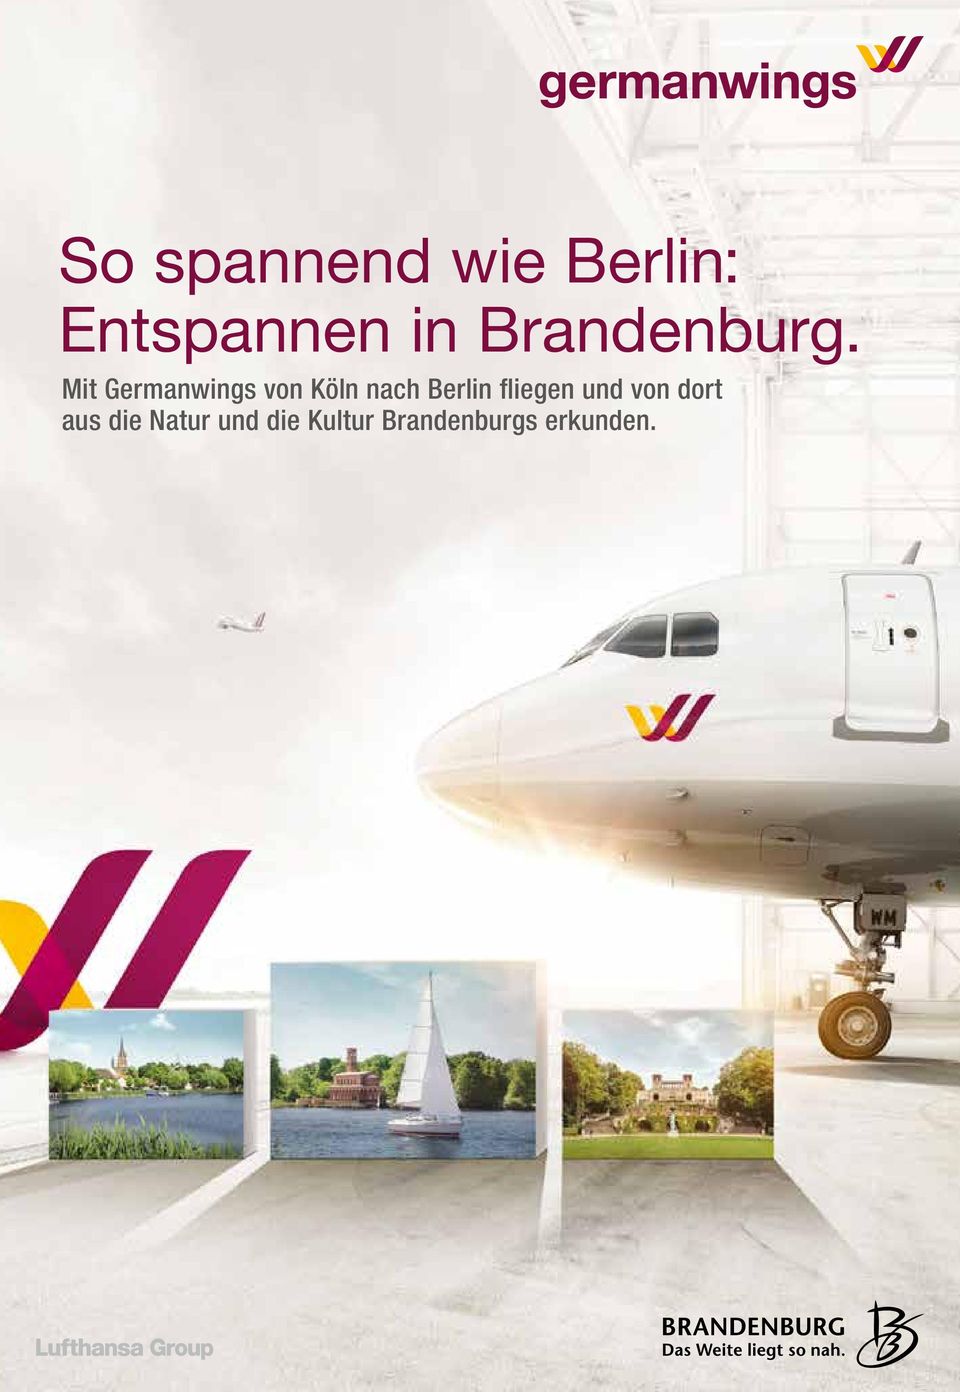 Mit Germanwings von Köln nach Berlin